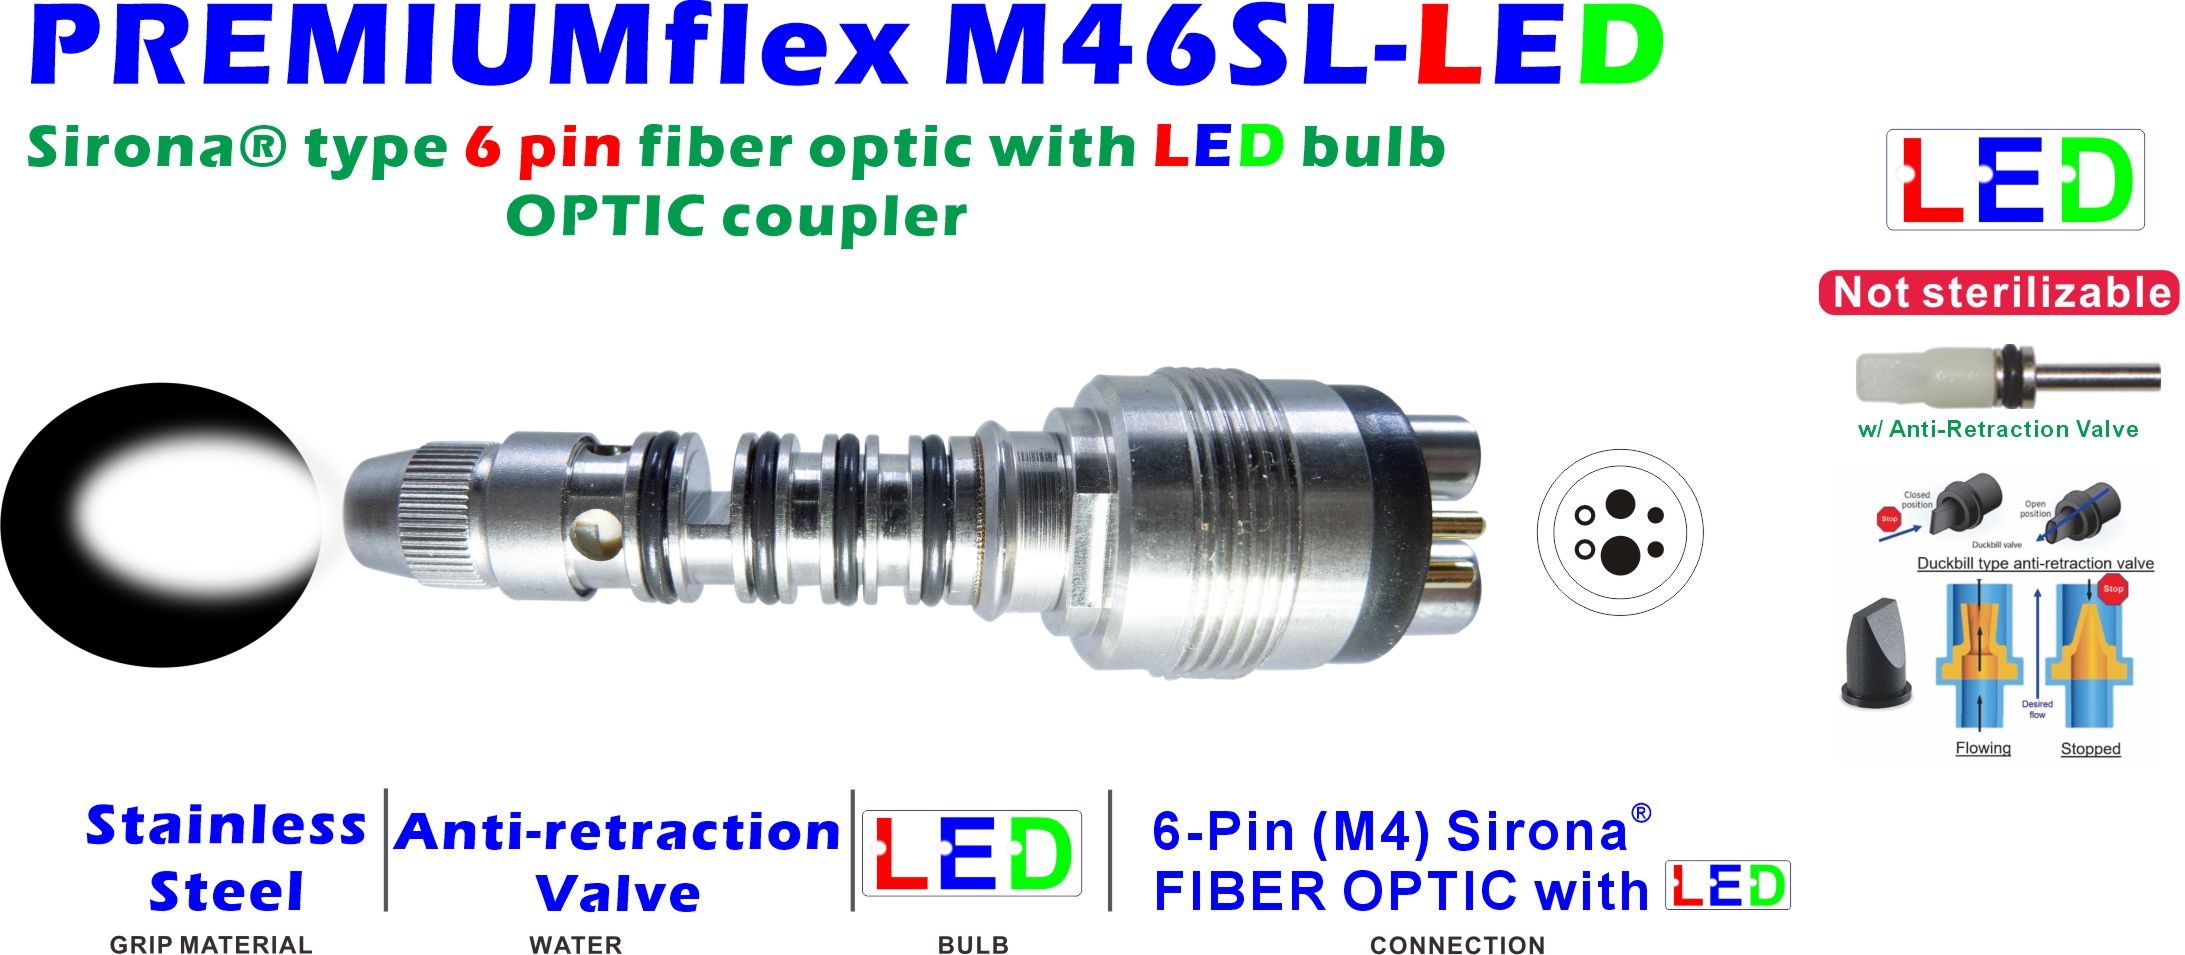 PREMIUMflex M46SL-LED-Detail